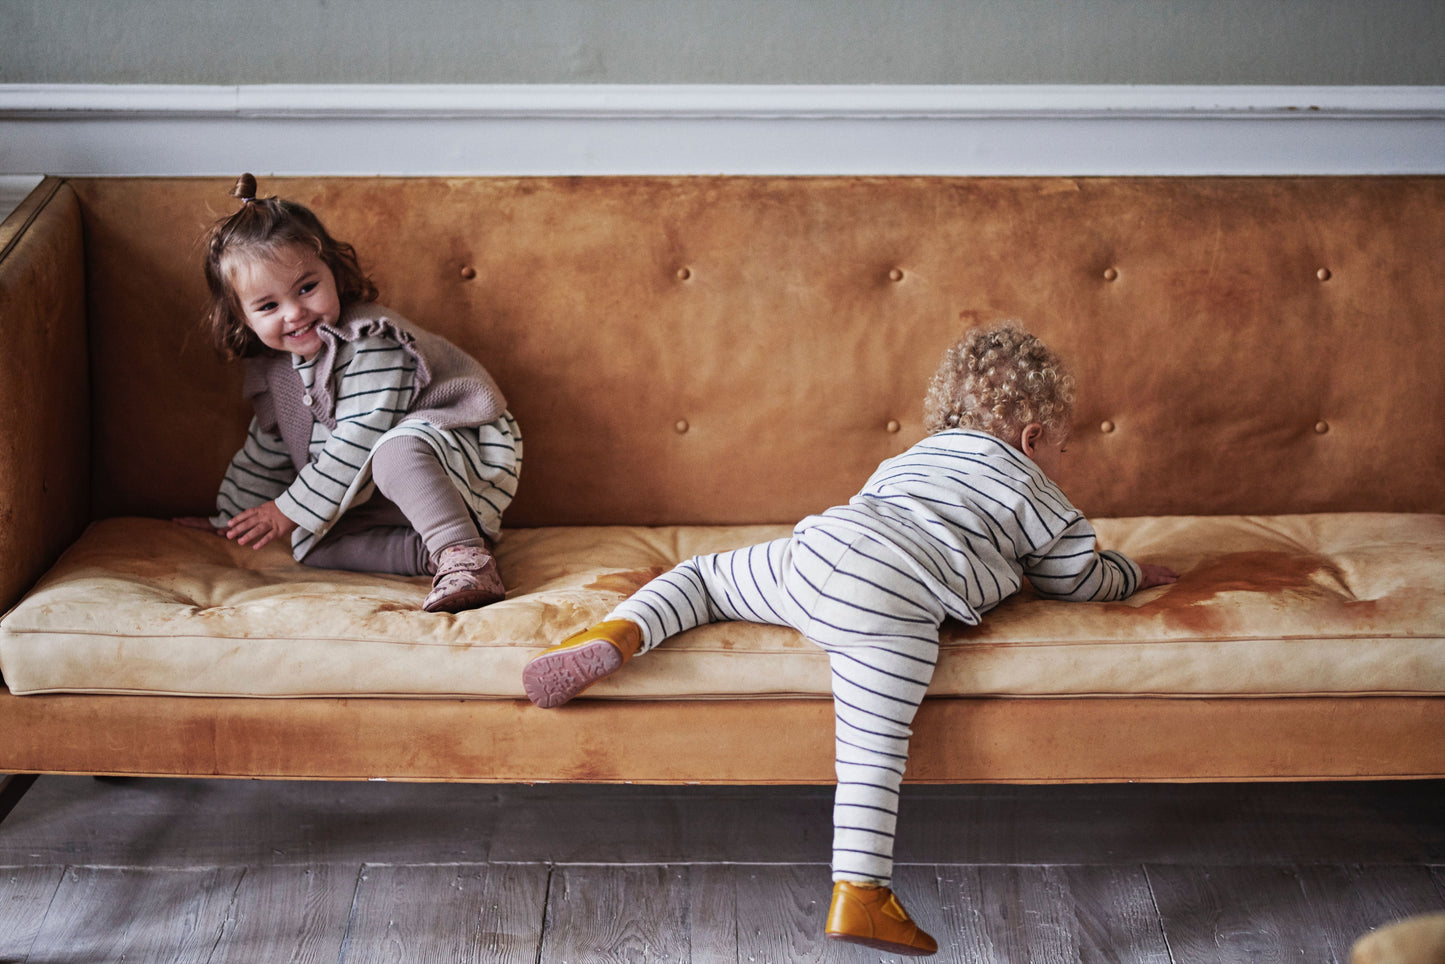 Bundgaard Tannu barfods hjemmesko til børn i farven tan, lifestyle